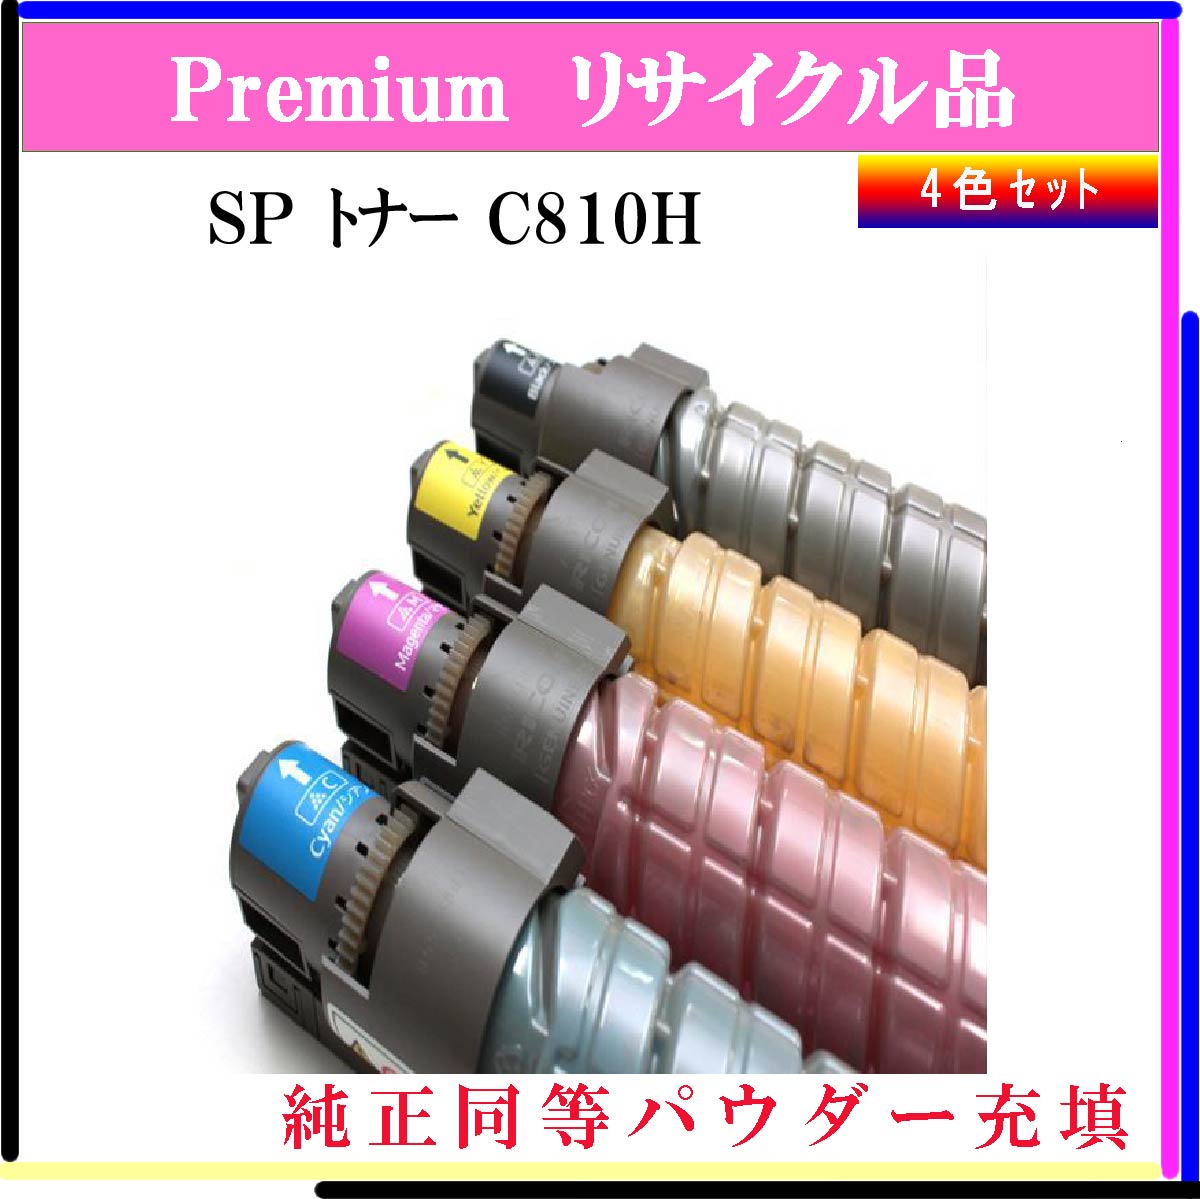 SP ﾄﾅｰ C810H (4色ｾｯﾄ) (純正同等ﾊﾟｳﾀﾞｰ) - ウインドウを閉じる